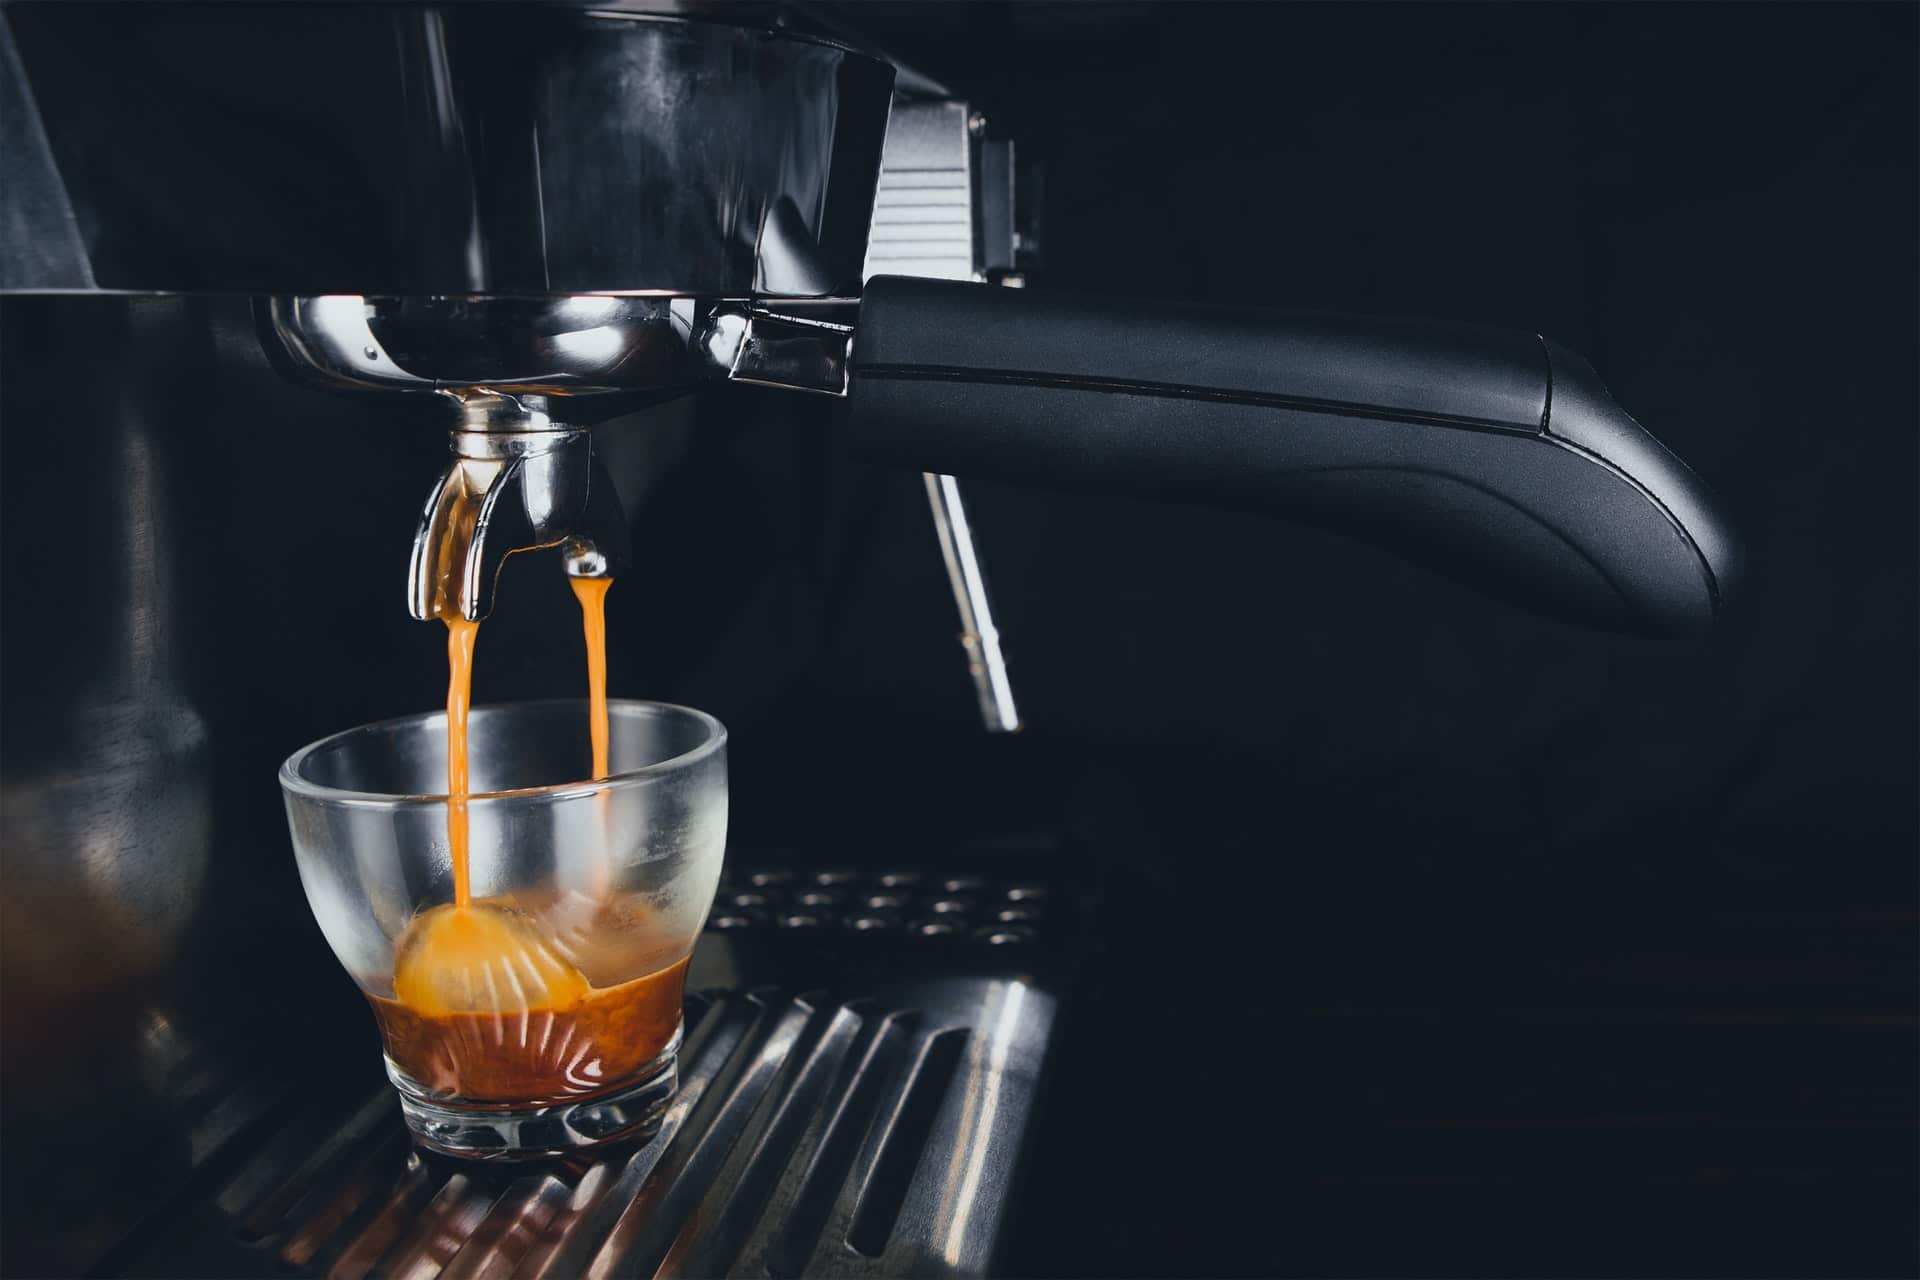 Bedste semiautomatiske - Bedste Kaffemaskine